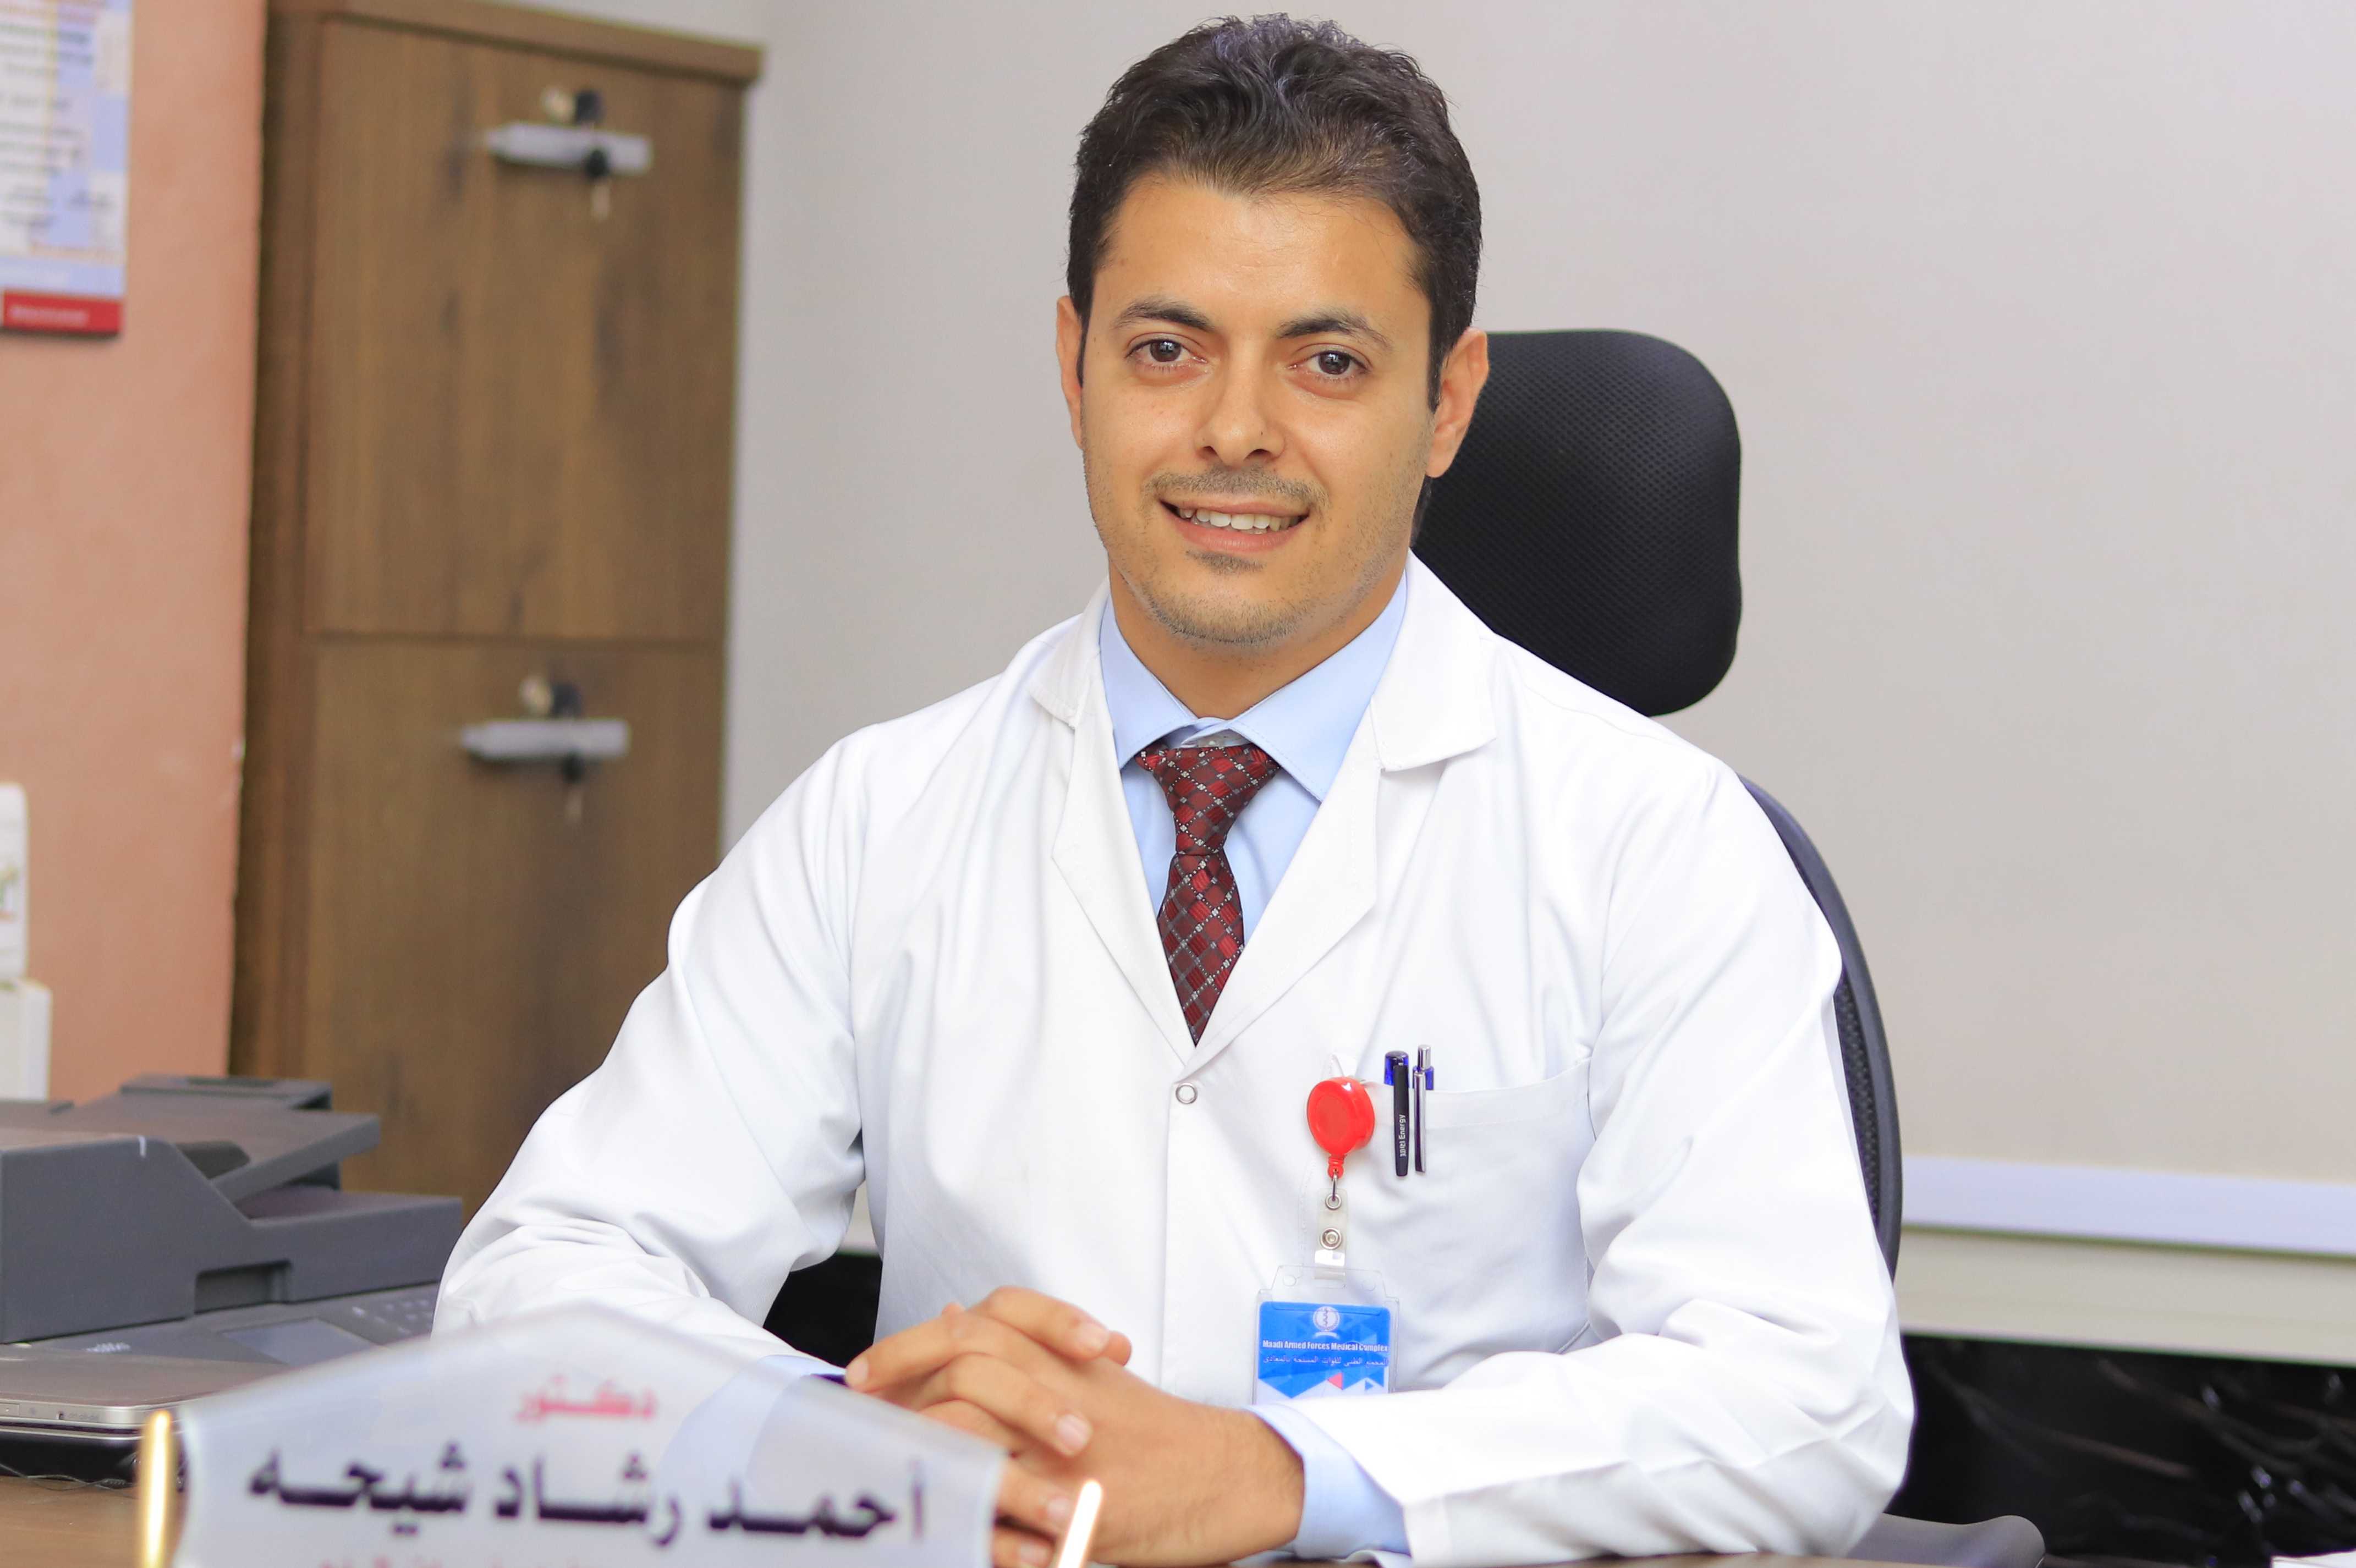 دكتور احمد شيحه